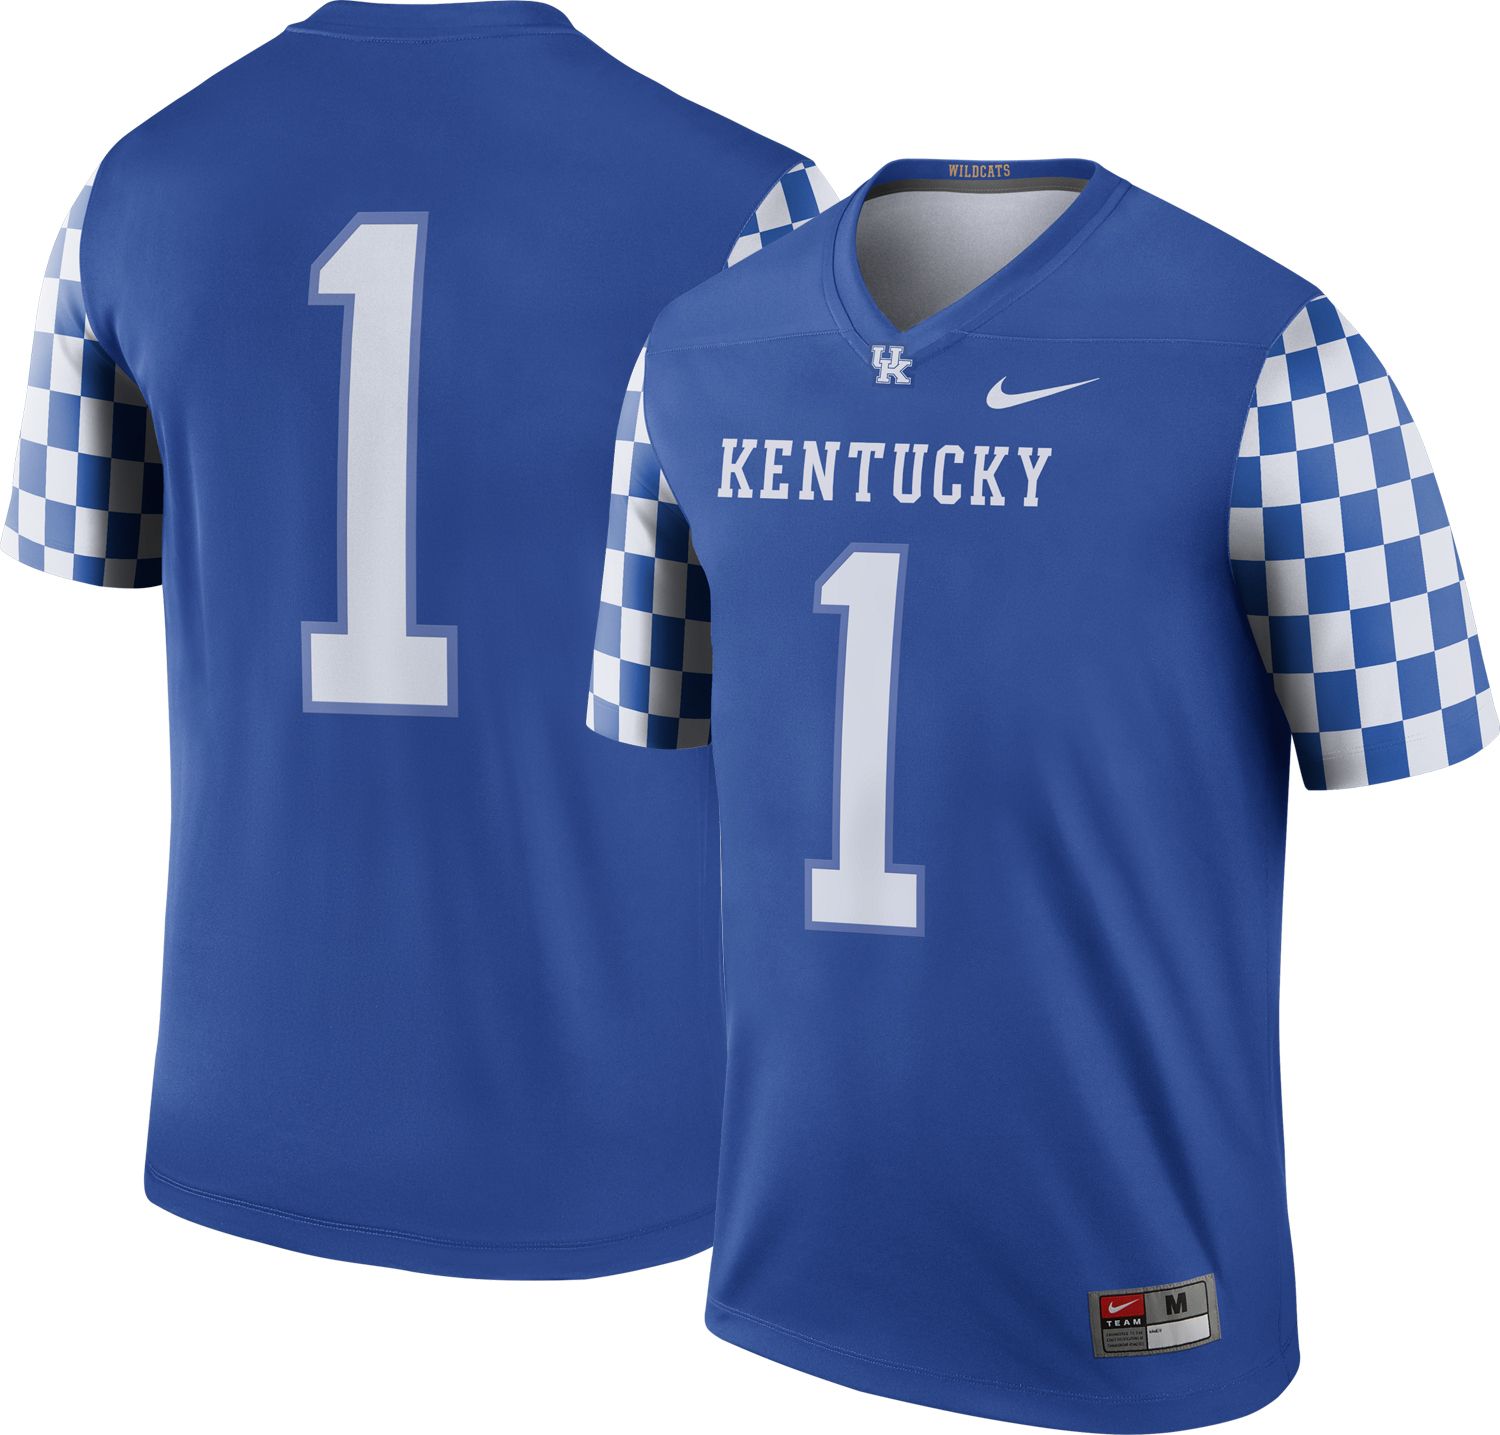 Kentucky Wildcats Jerseys | Best Price Guarantee at DICK'S